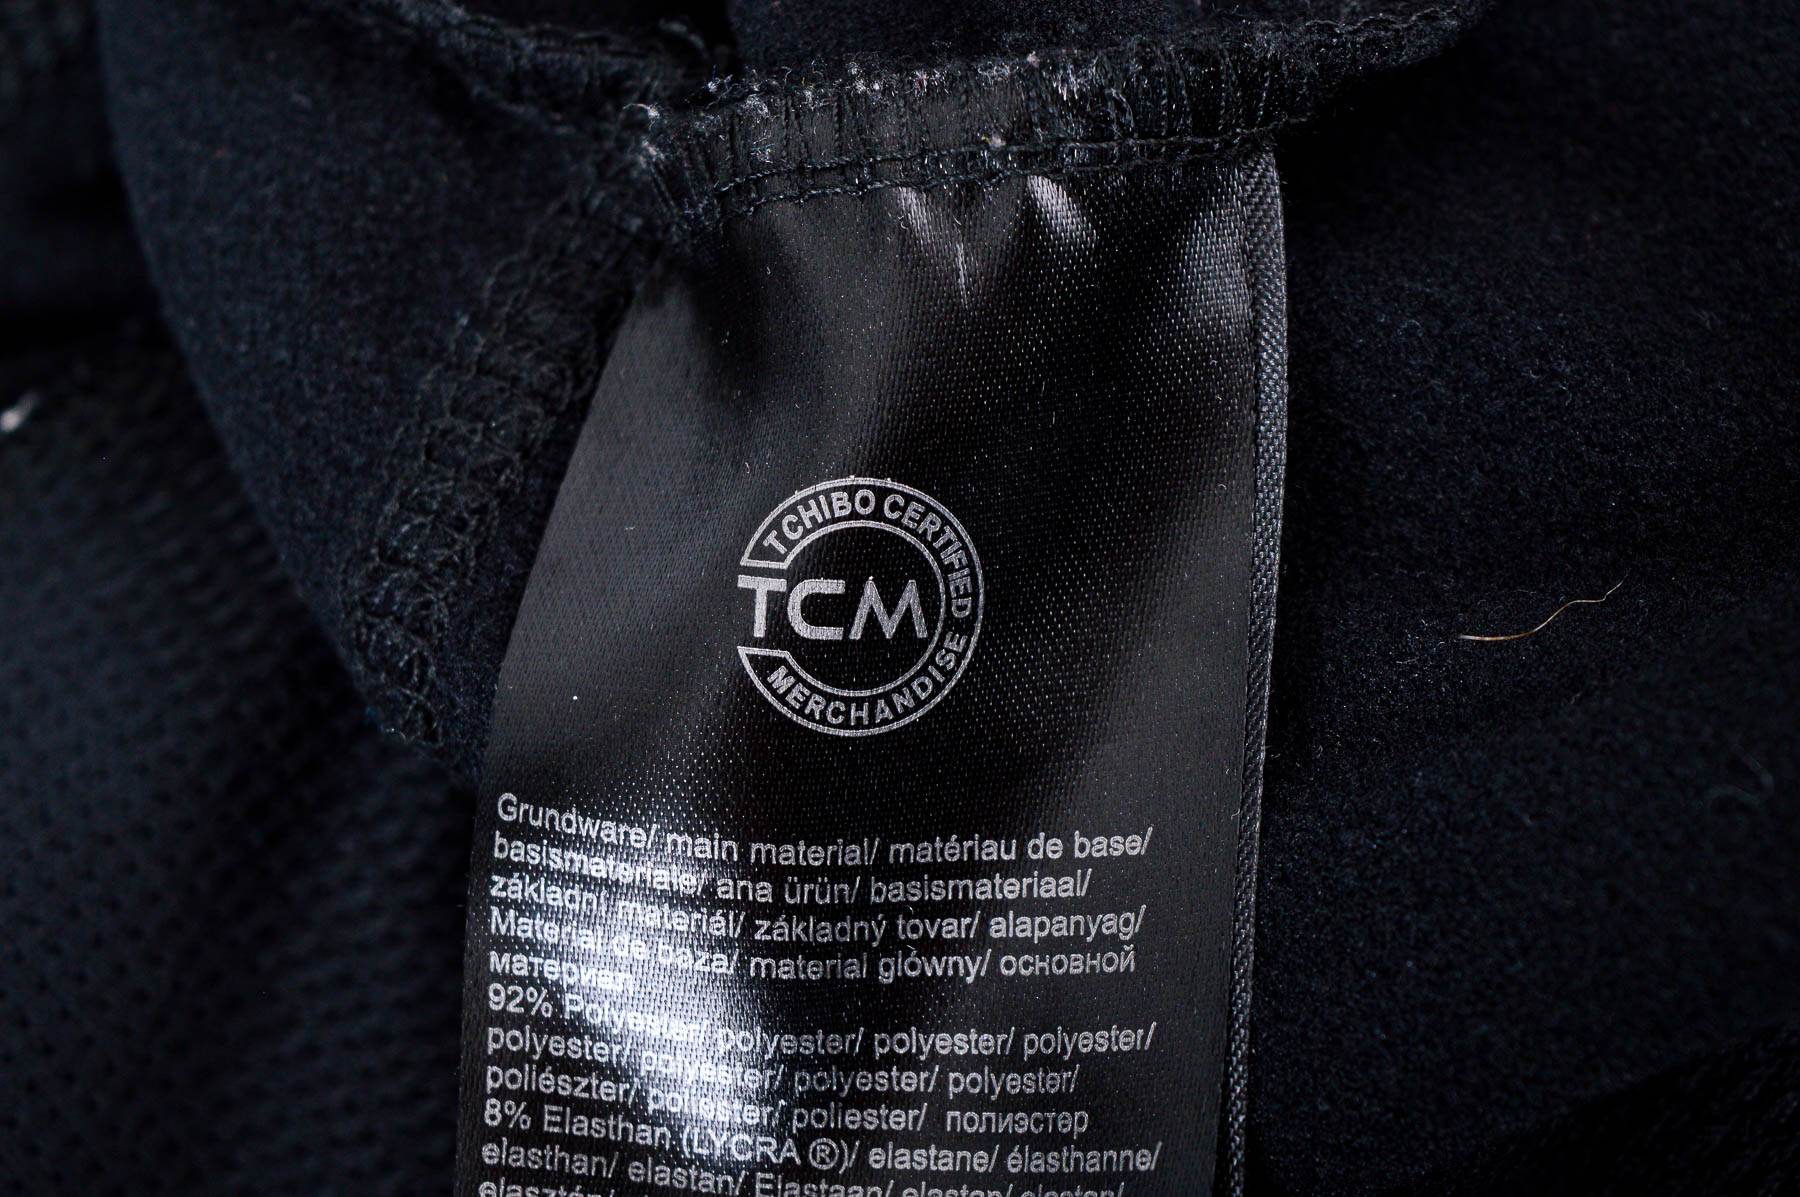 Men's sport blouse - TCM - 2